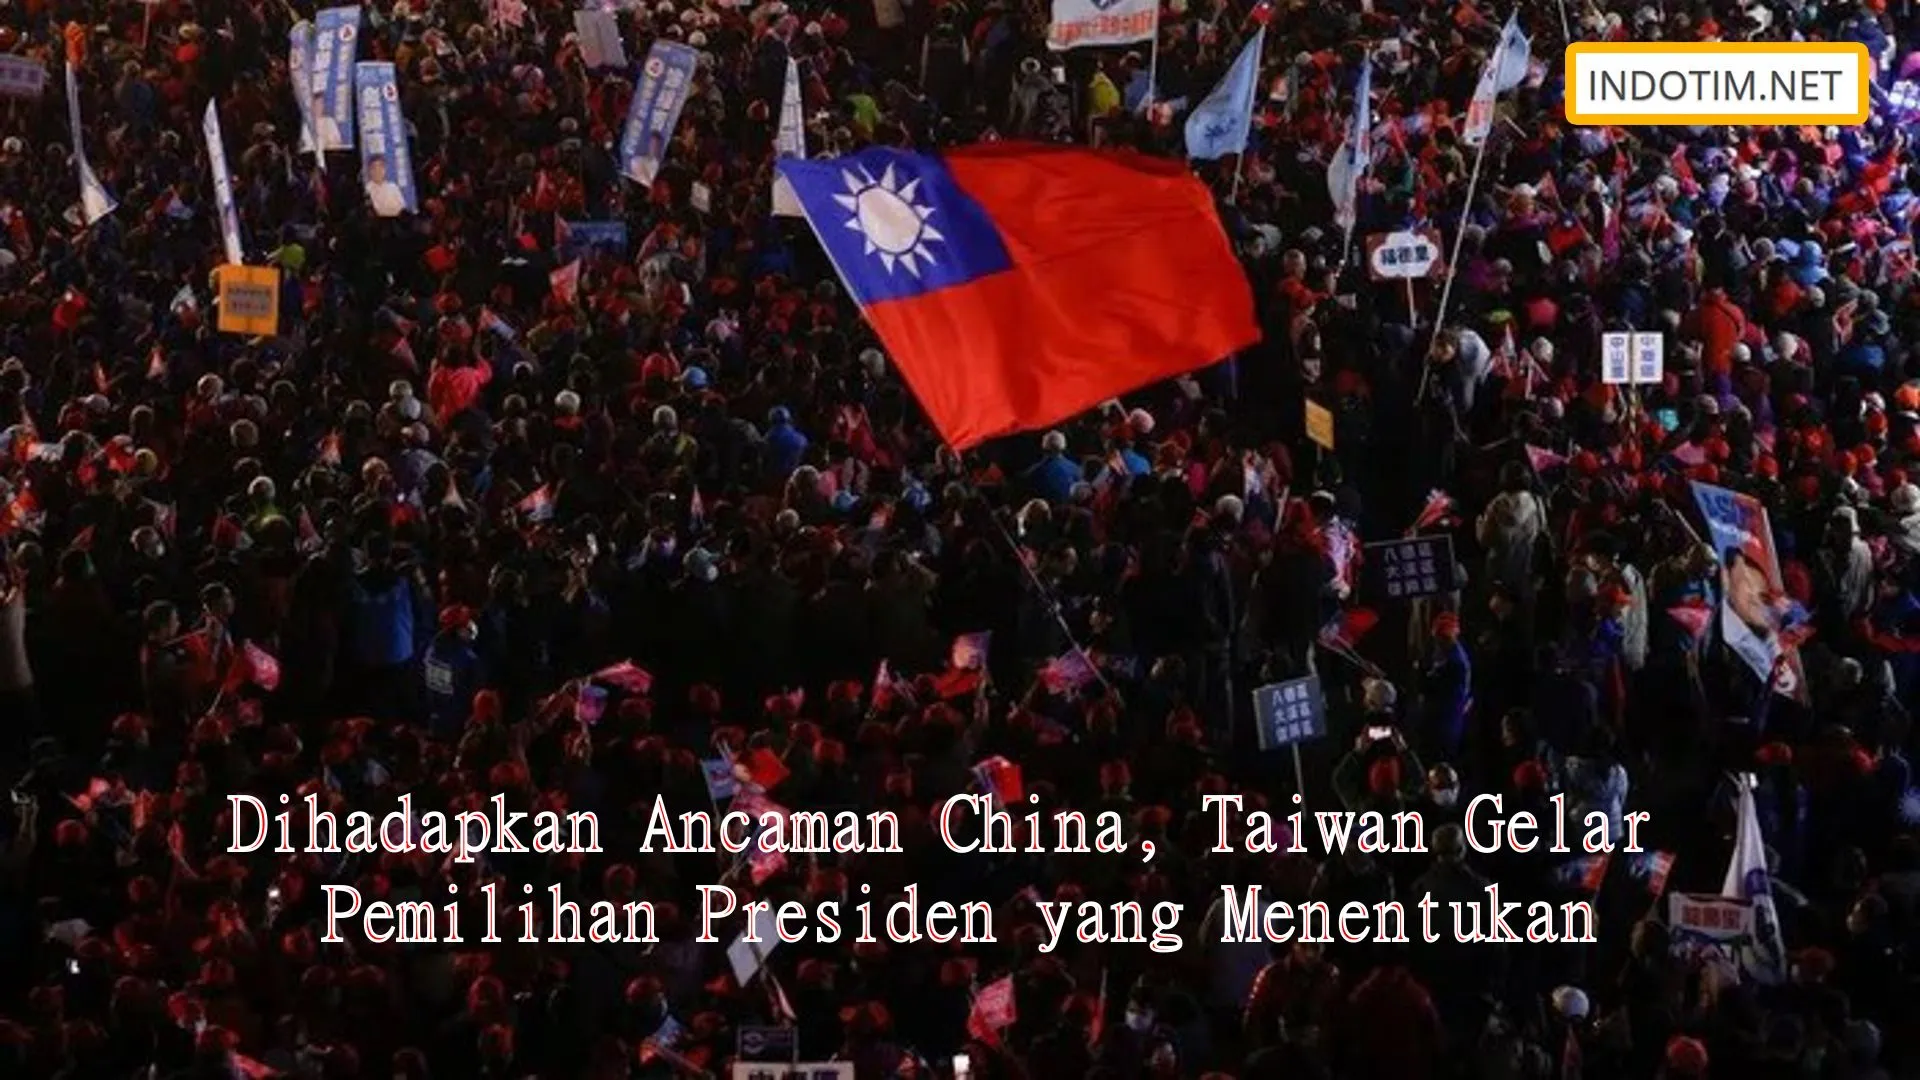 Dihadapkan Ancaman China, Taiwan Gelar Pemilihan Presiden yang Menentukan